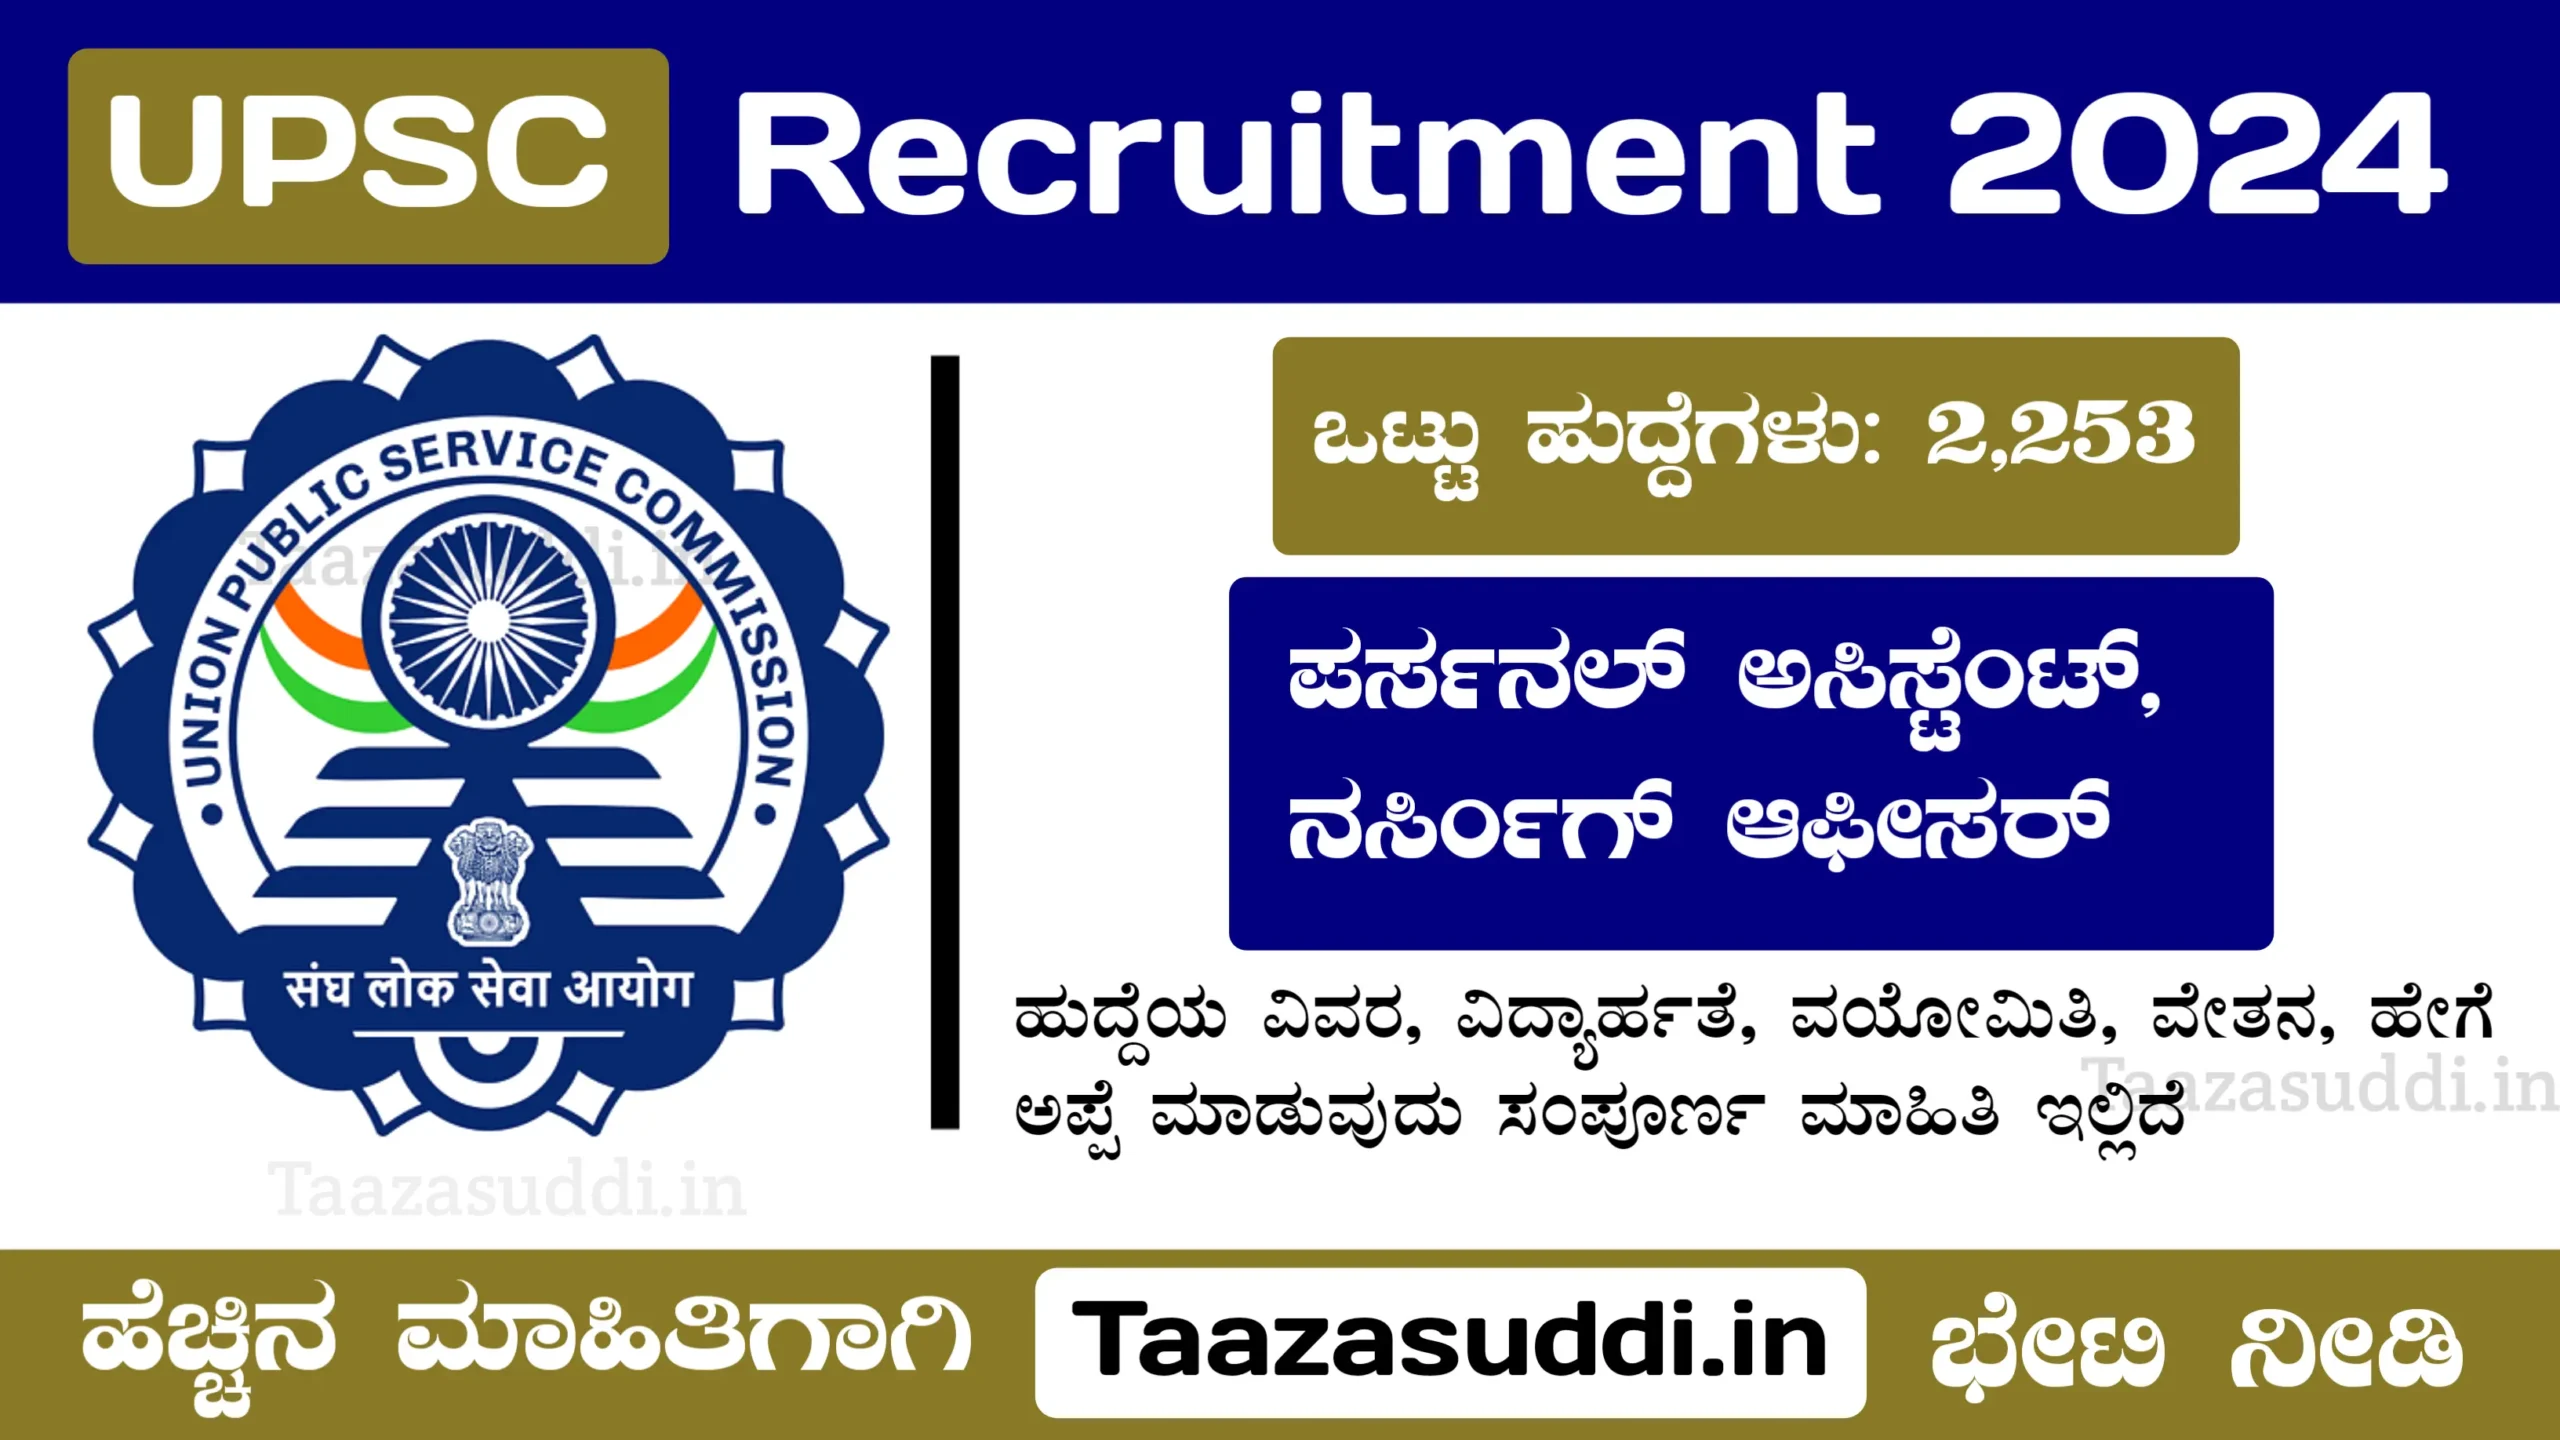 ಕೇಂದ್ರ ಲೋಕಸೇವಾ ಆಯೋಗ ನೇಮಕಾತಿ | UPSC Recruitment 2024 Apply Online @ upsconline.nic.in